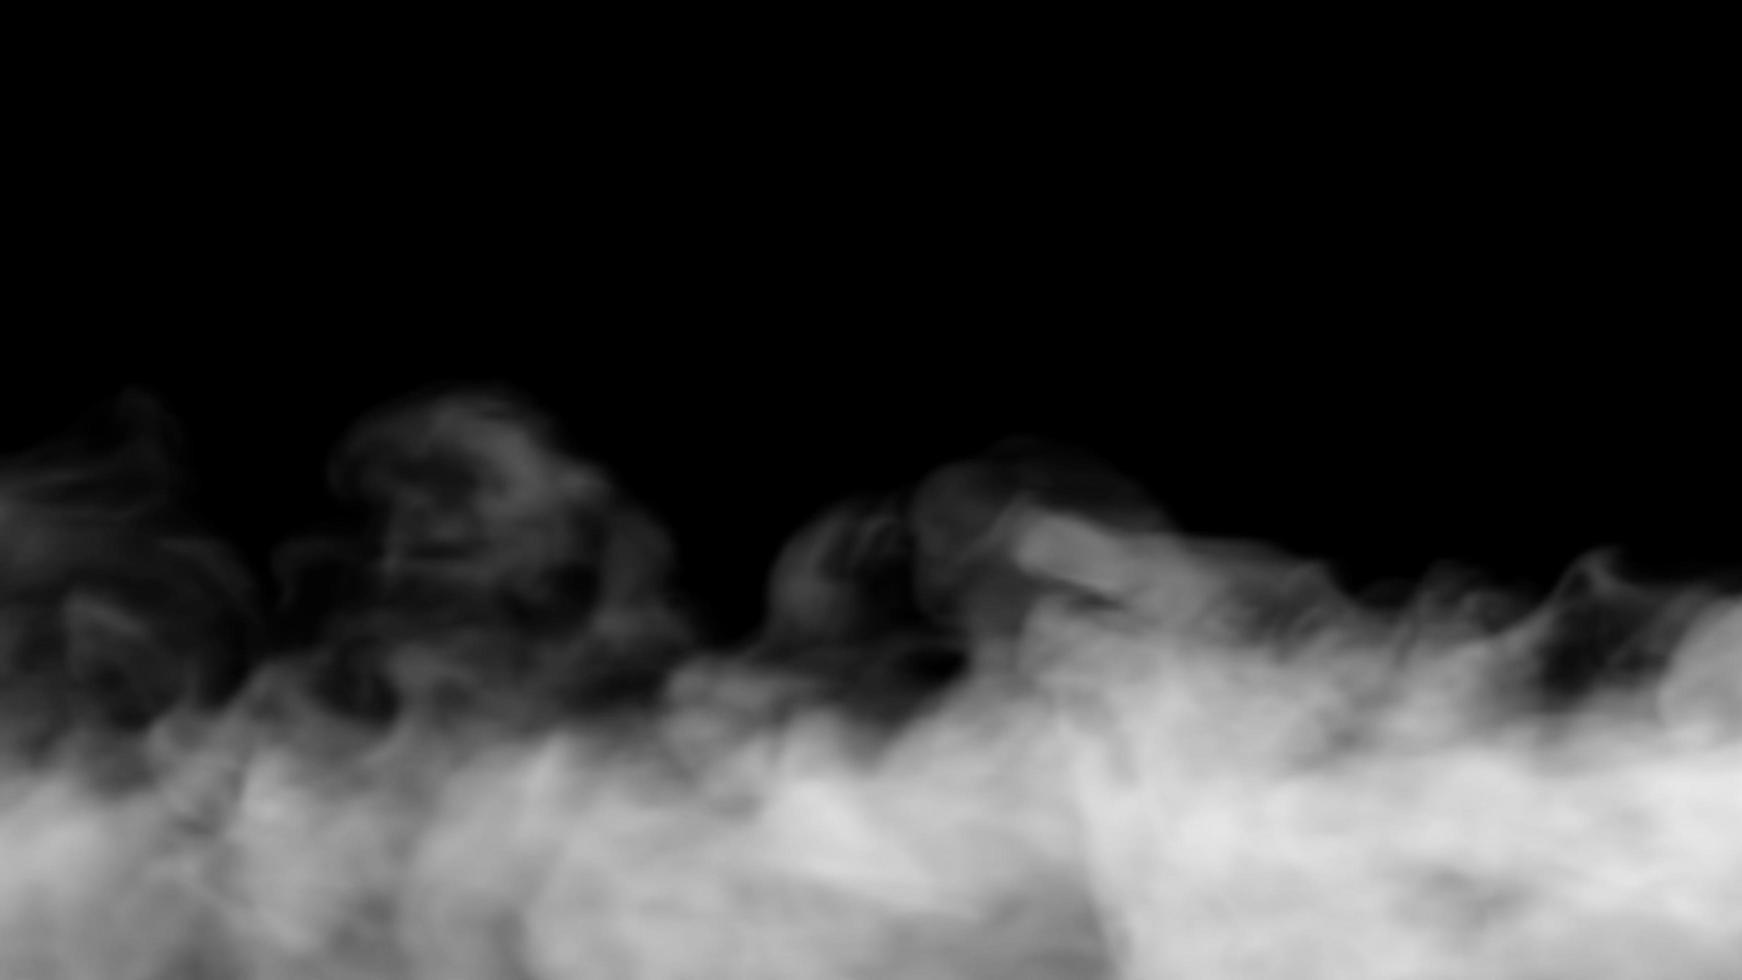 fumée sur fond noir photo